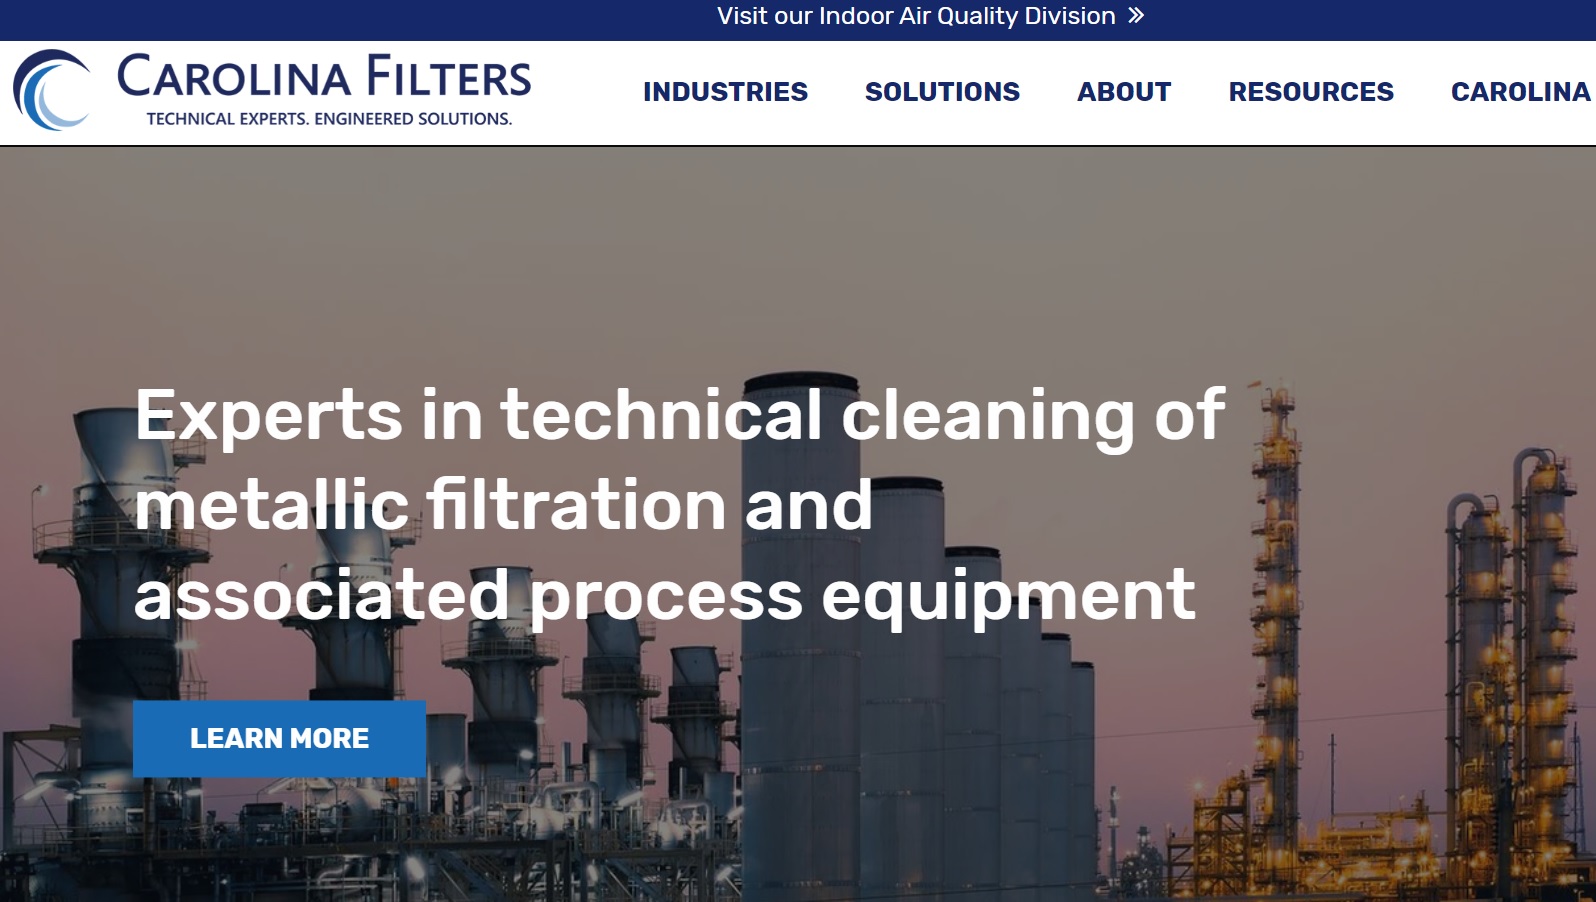 Carolina Filters, Inc.